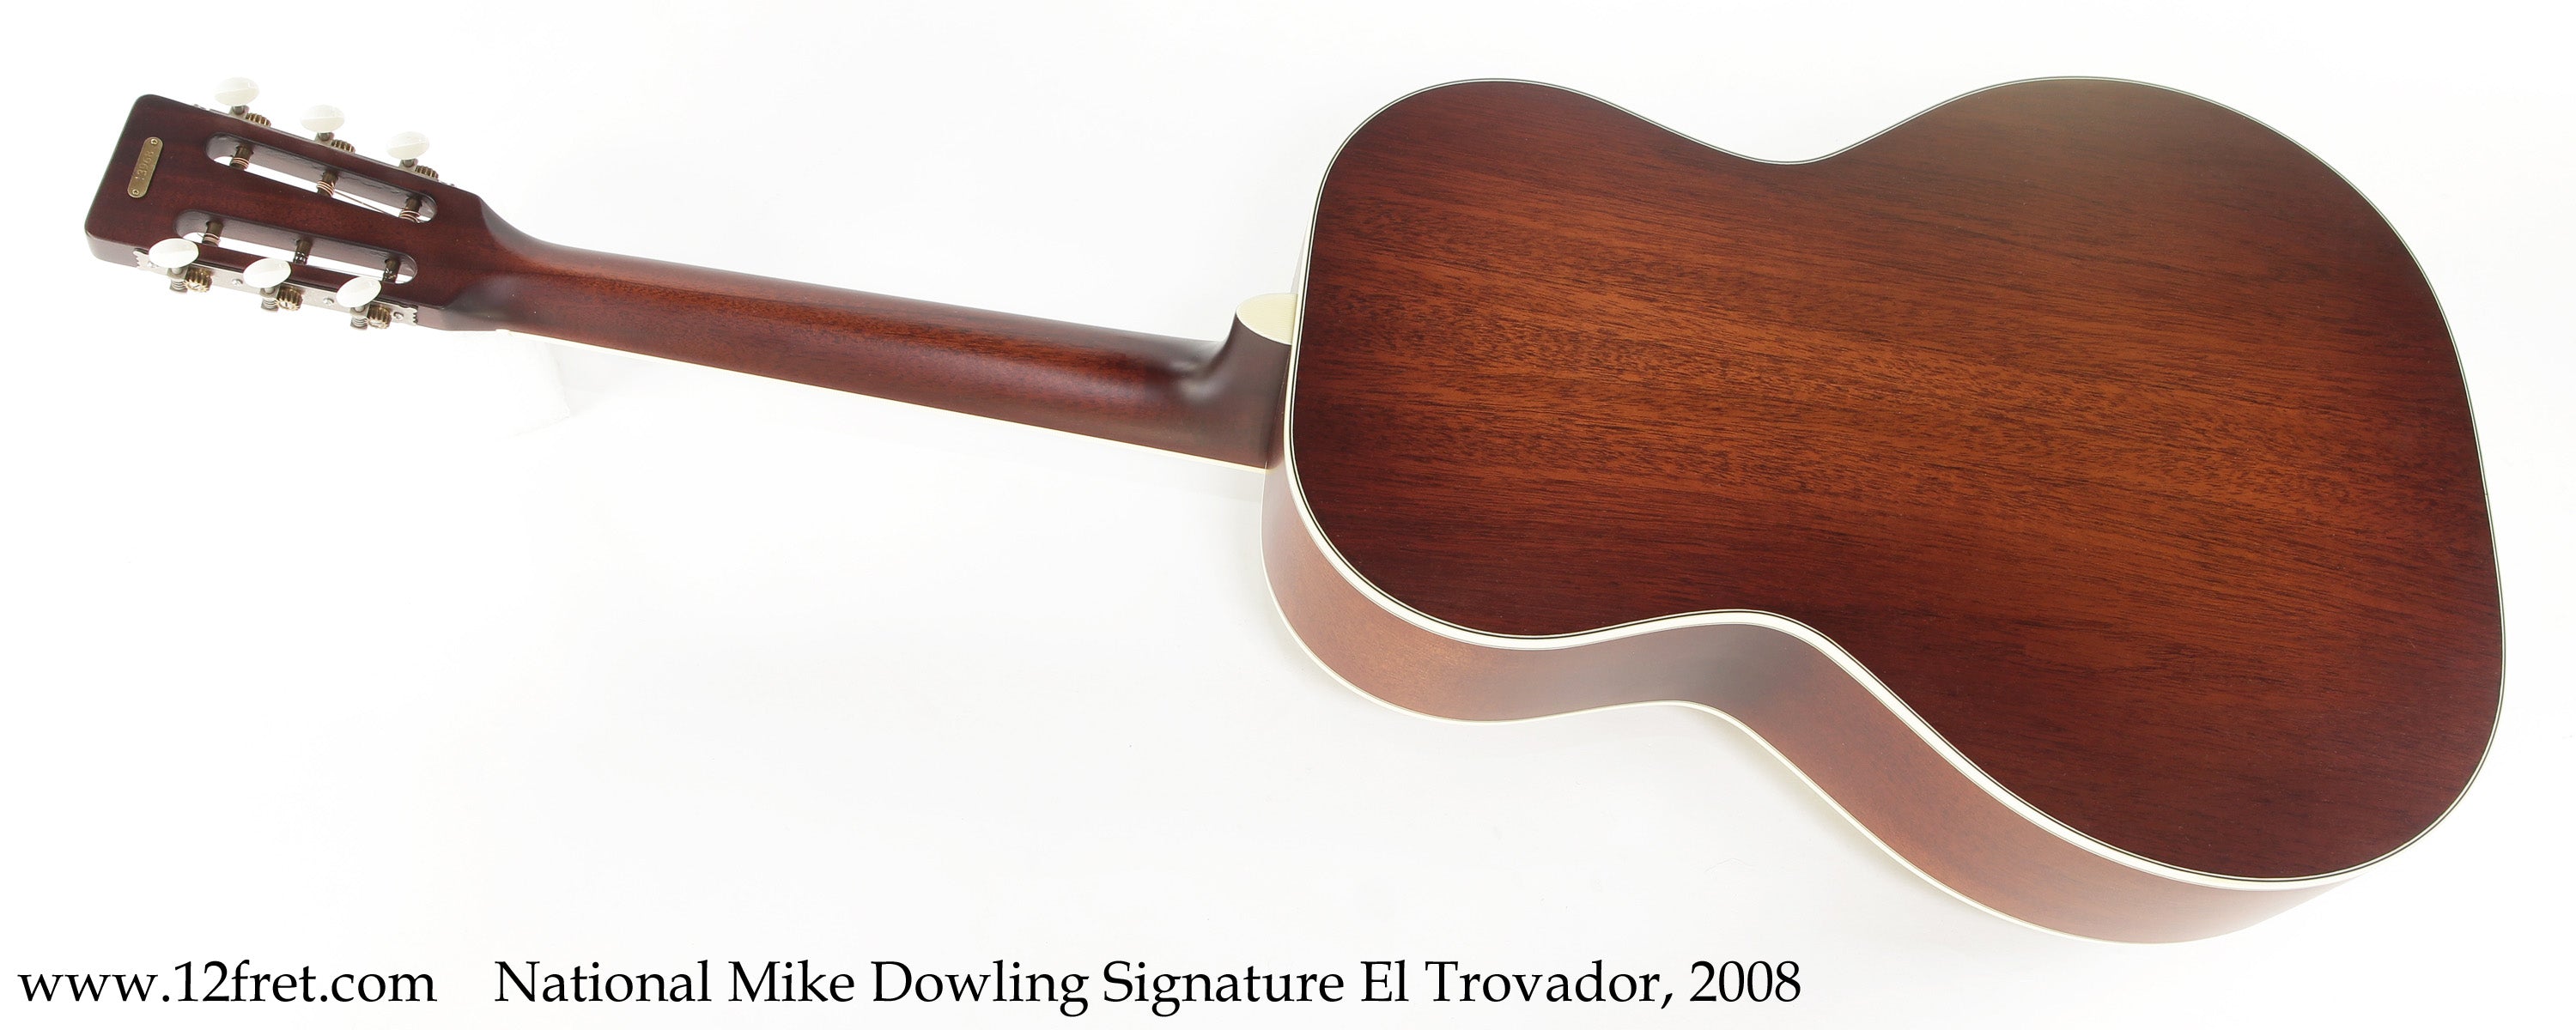 National Mike Dowling Signature El Trovador Natural, 2008 - The Twelfth Fret